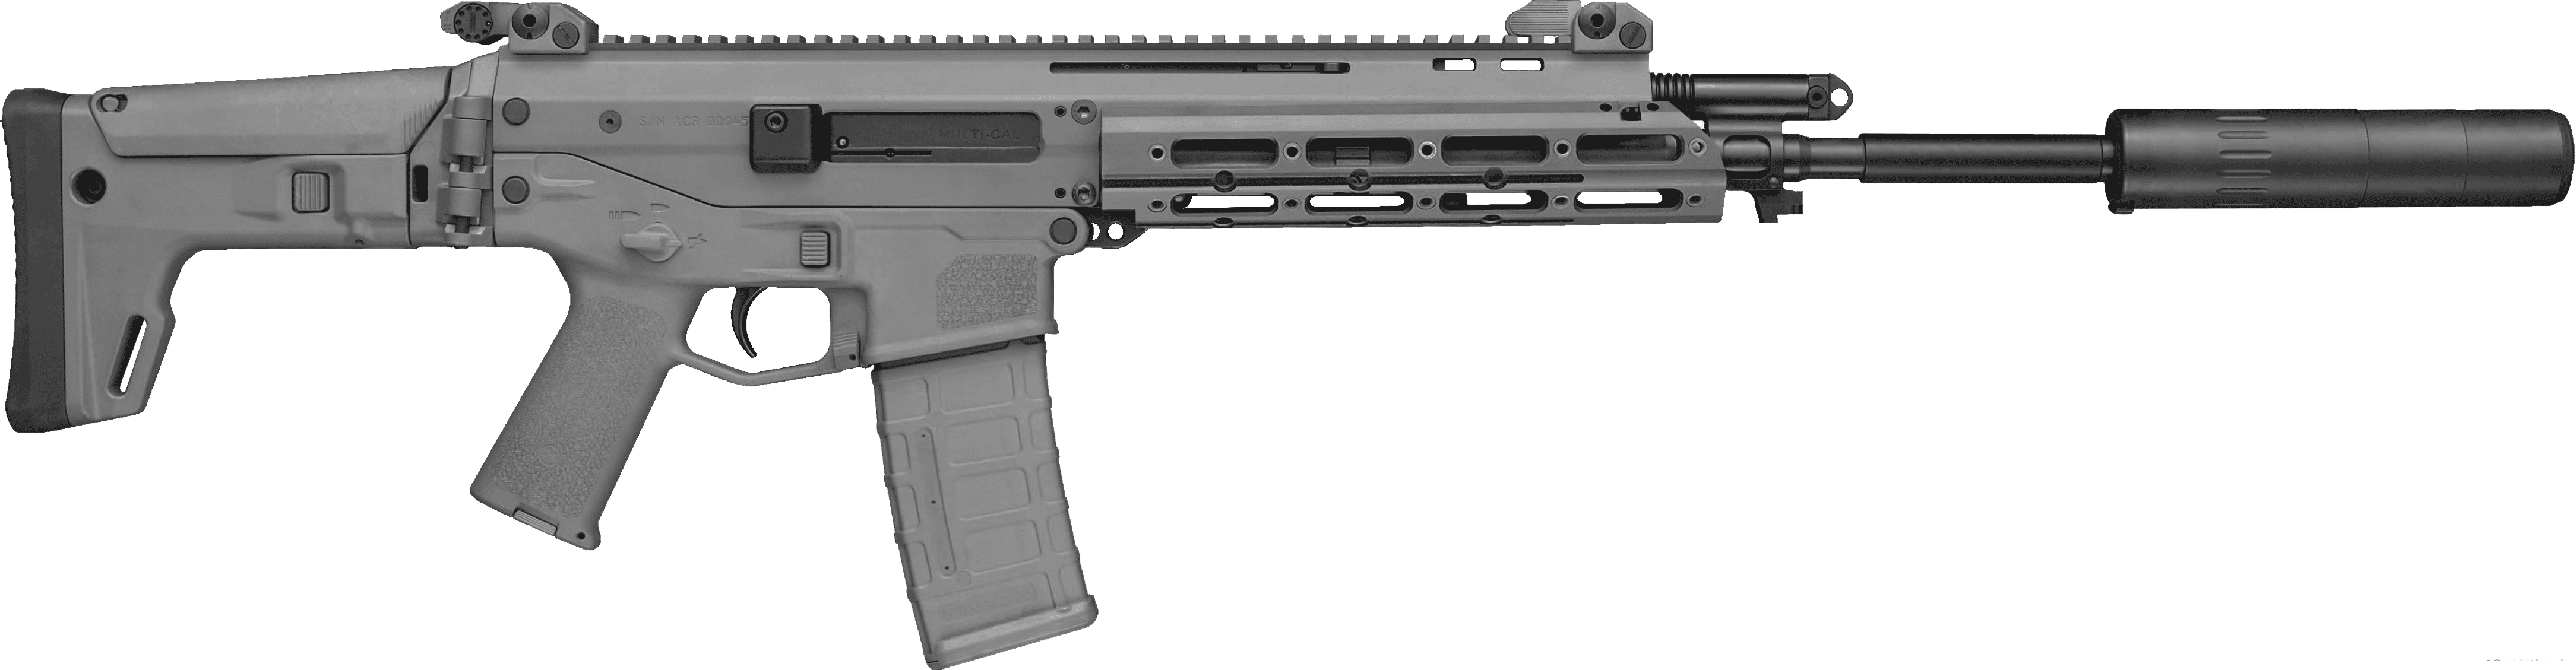 Assault Rifle HD PNG - Assault Rifle